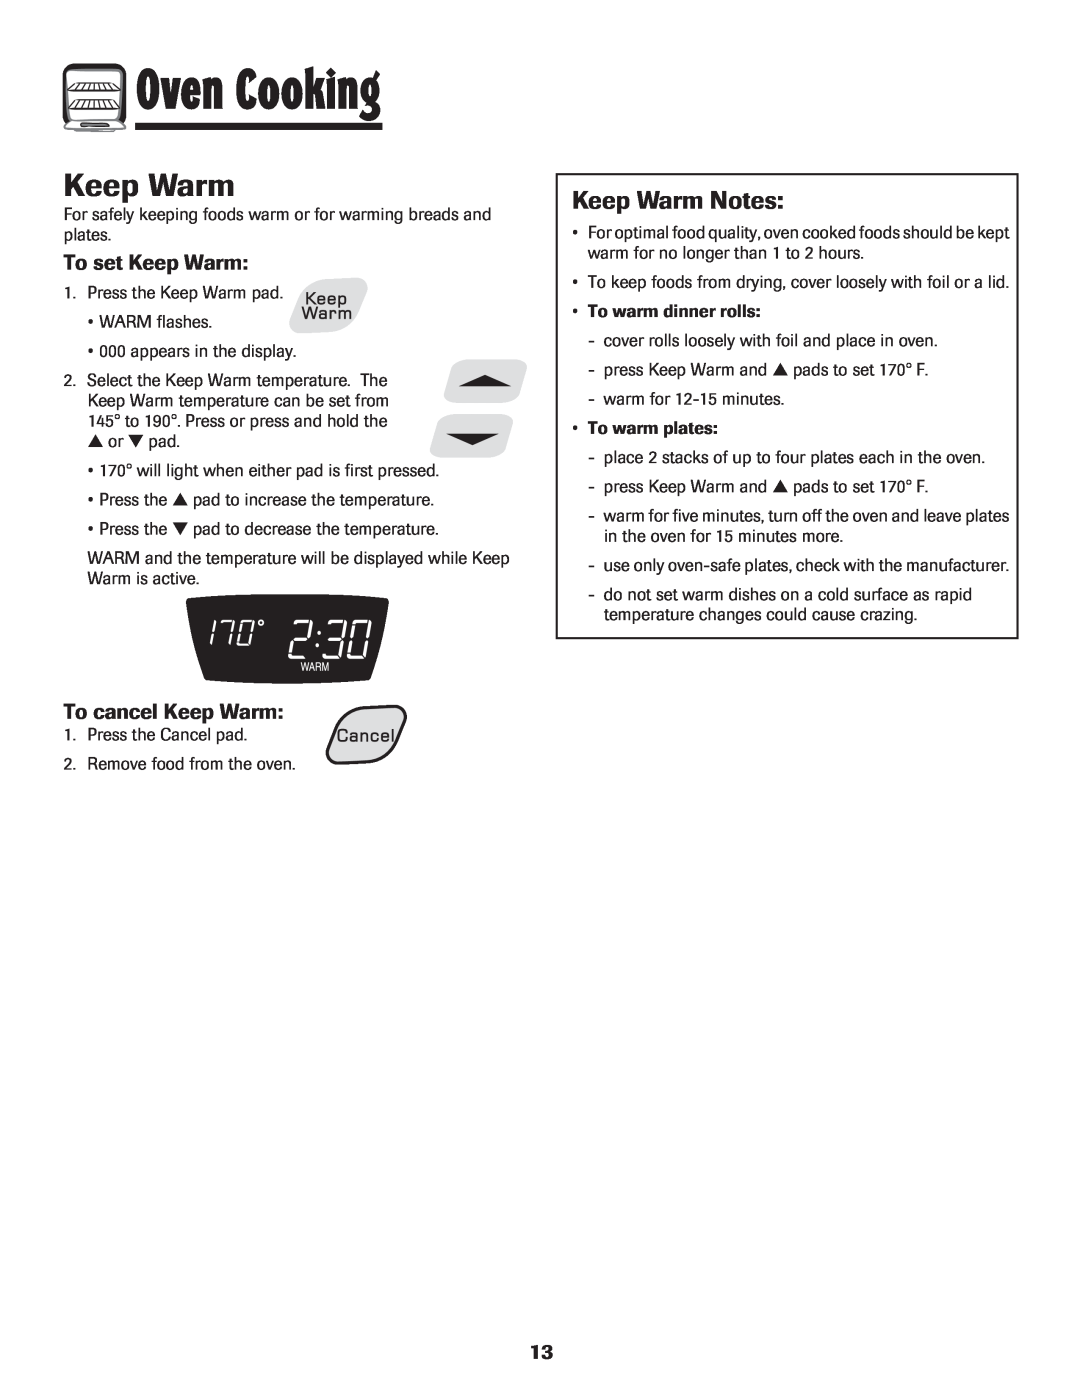 Amana 8113P454-60 warranty Keep Warm Notes, To set Keep Warm, To cancel Keep Warm, Oven Cooking 